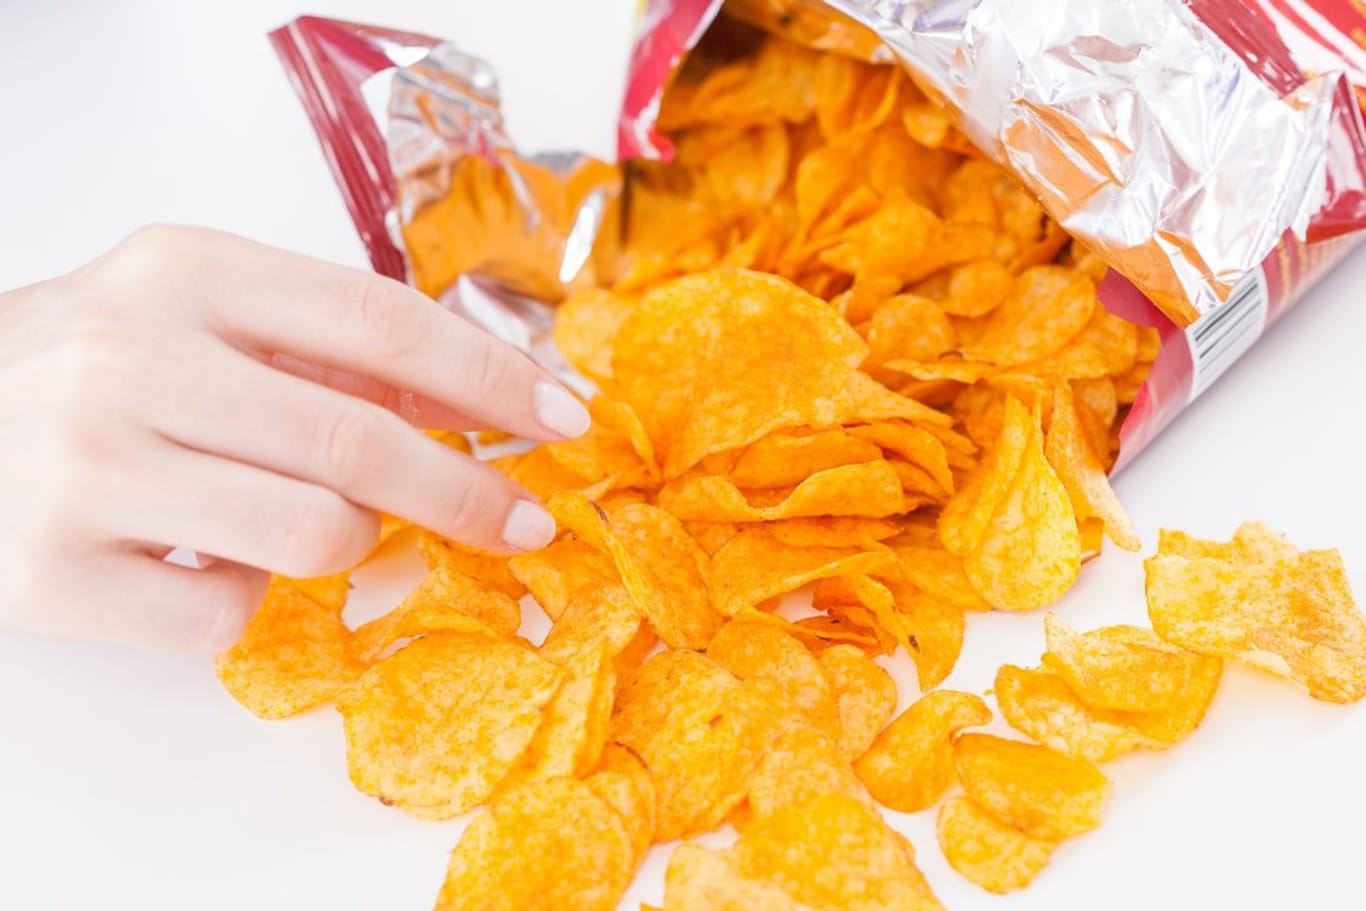 Der schnelle Griff in die Tüte: Wer Chips mag, soll sie auch essen, sagen Experten - allerdings bewusst und mit Genuss.